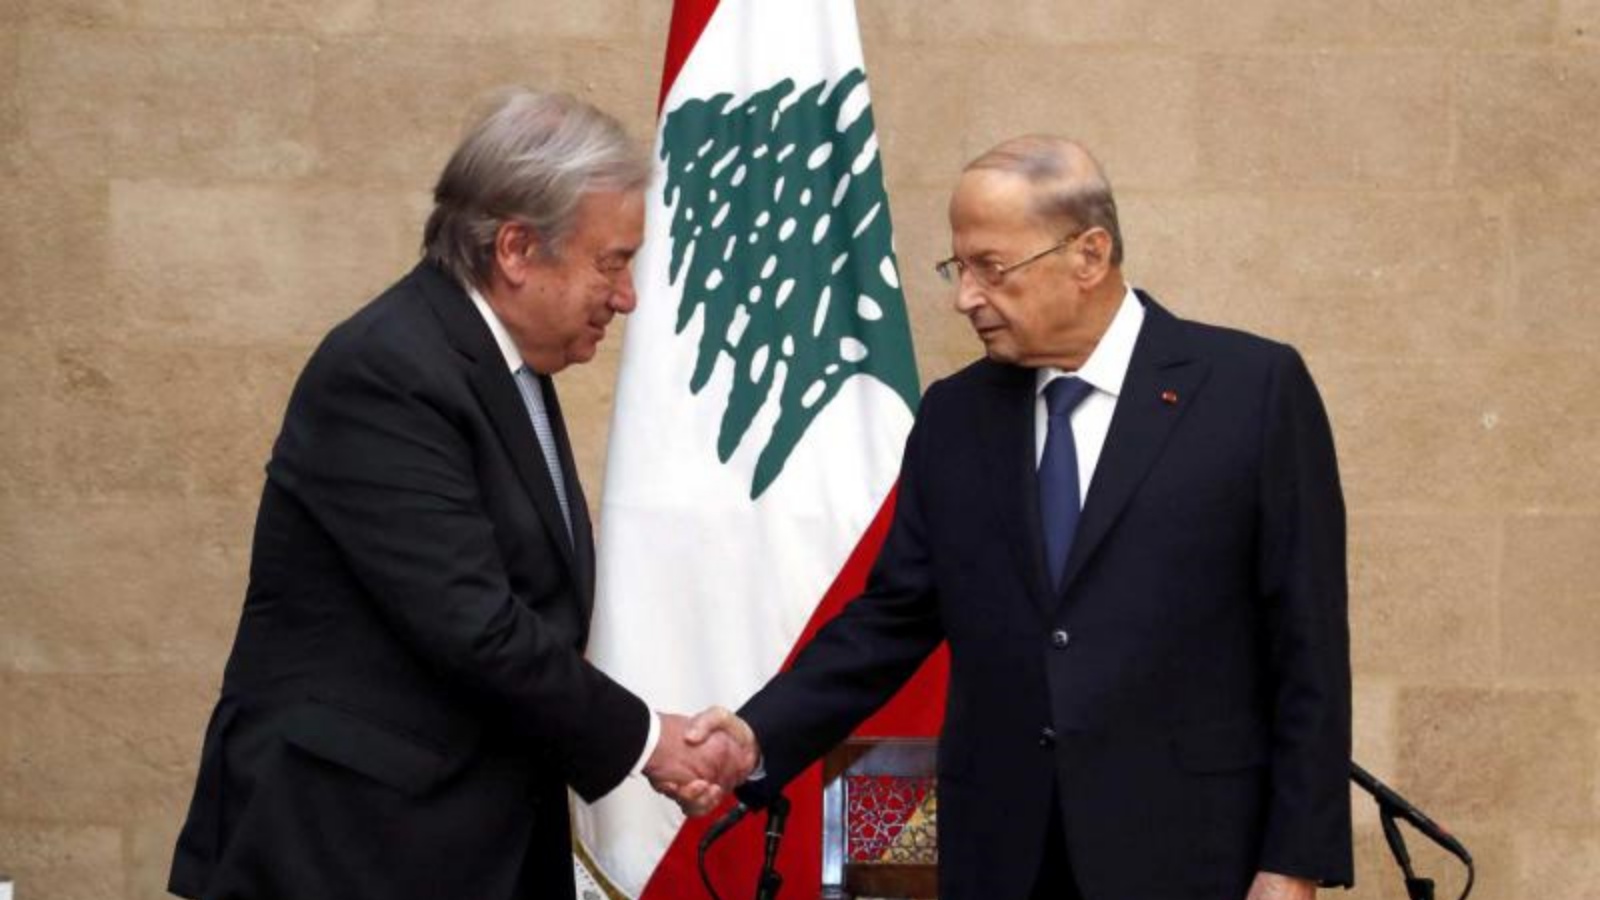 الأمين العام للأمم المتحدة أنطونيو غوتيريش يلتقي بالرئيس اللبناني ميشال عون في بعبدا، لبنان. 19 كانون الأول/ديسمبر 2021.